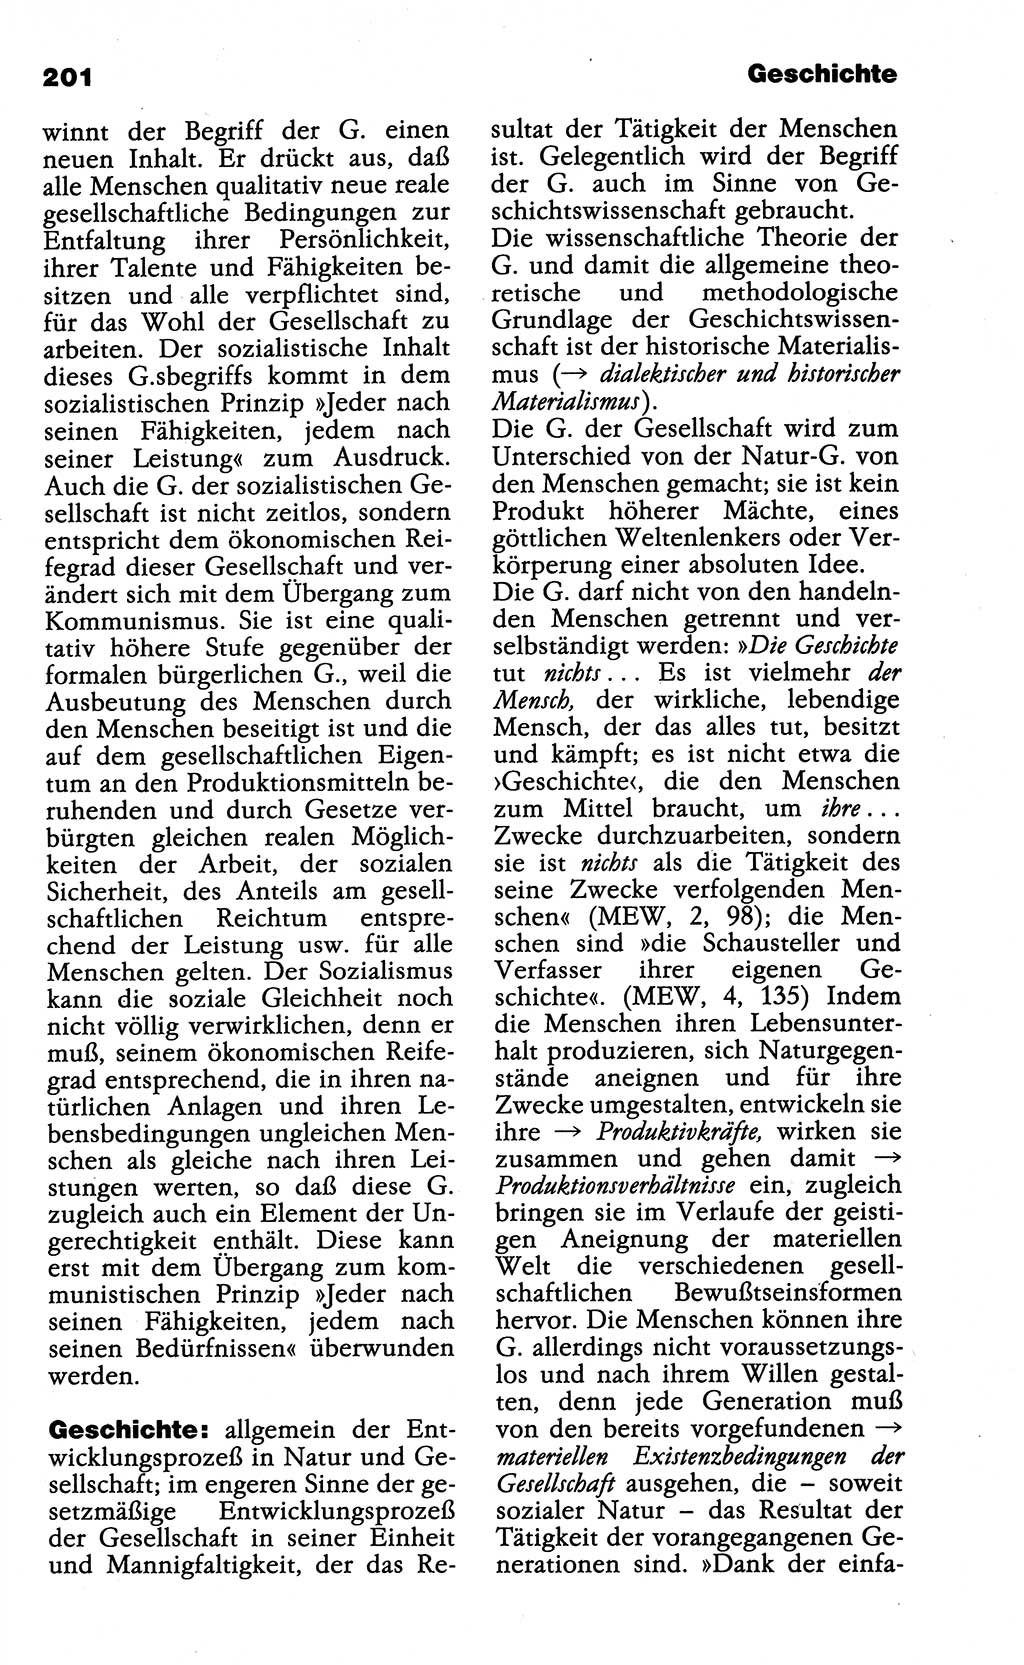 Wörterbuch der marxistisch-leninistischen Philosophie [Deutsche Demokratische Republik (DDR)] 1985, Seite 201 (Wb. ML Phil. DDR 1985, S. 201)